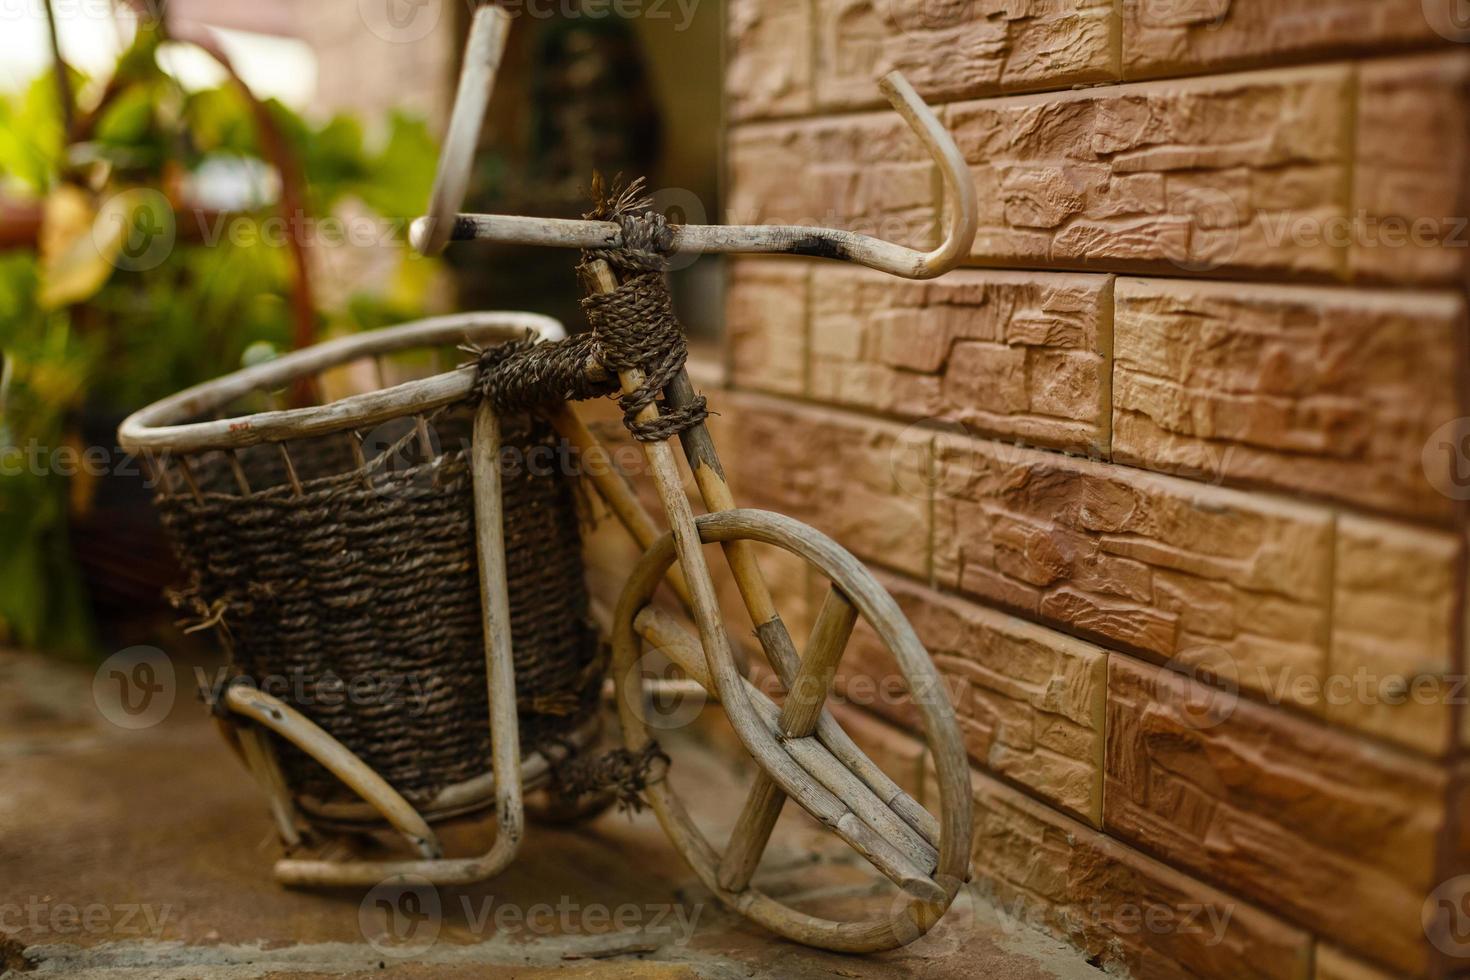 flor en la cesta de la bicicleta vieja vintage cerca de la cafetería de la calle de verano de madera vintage en europa foto